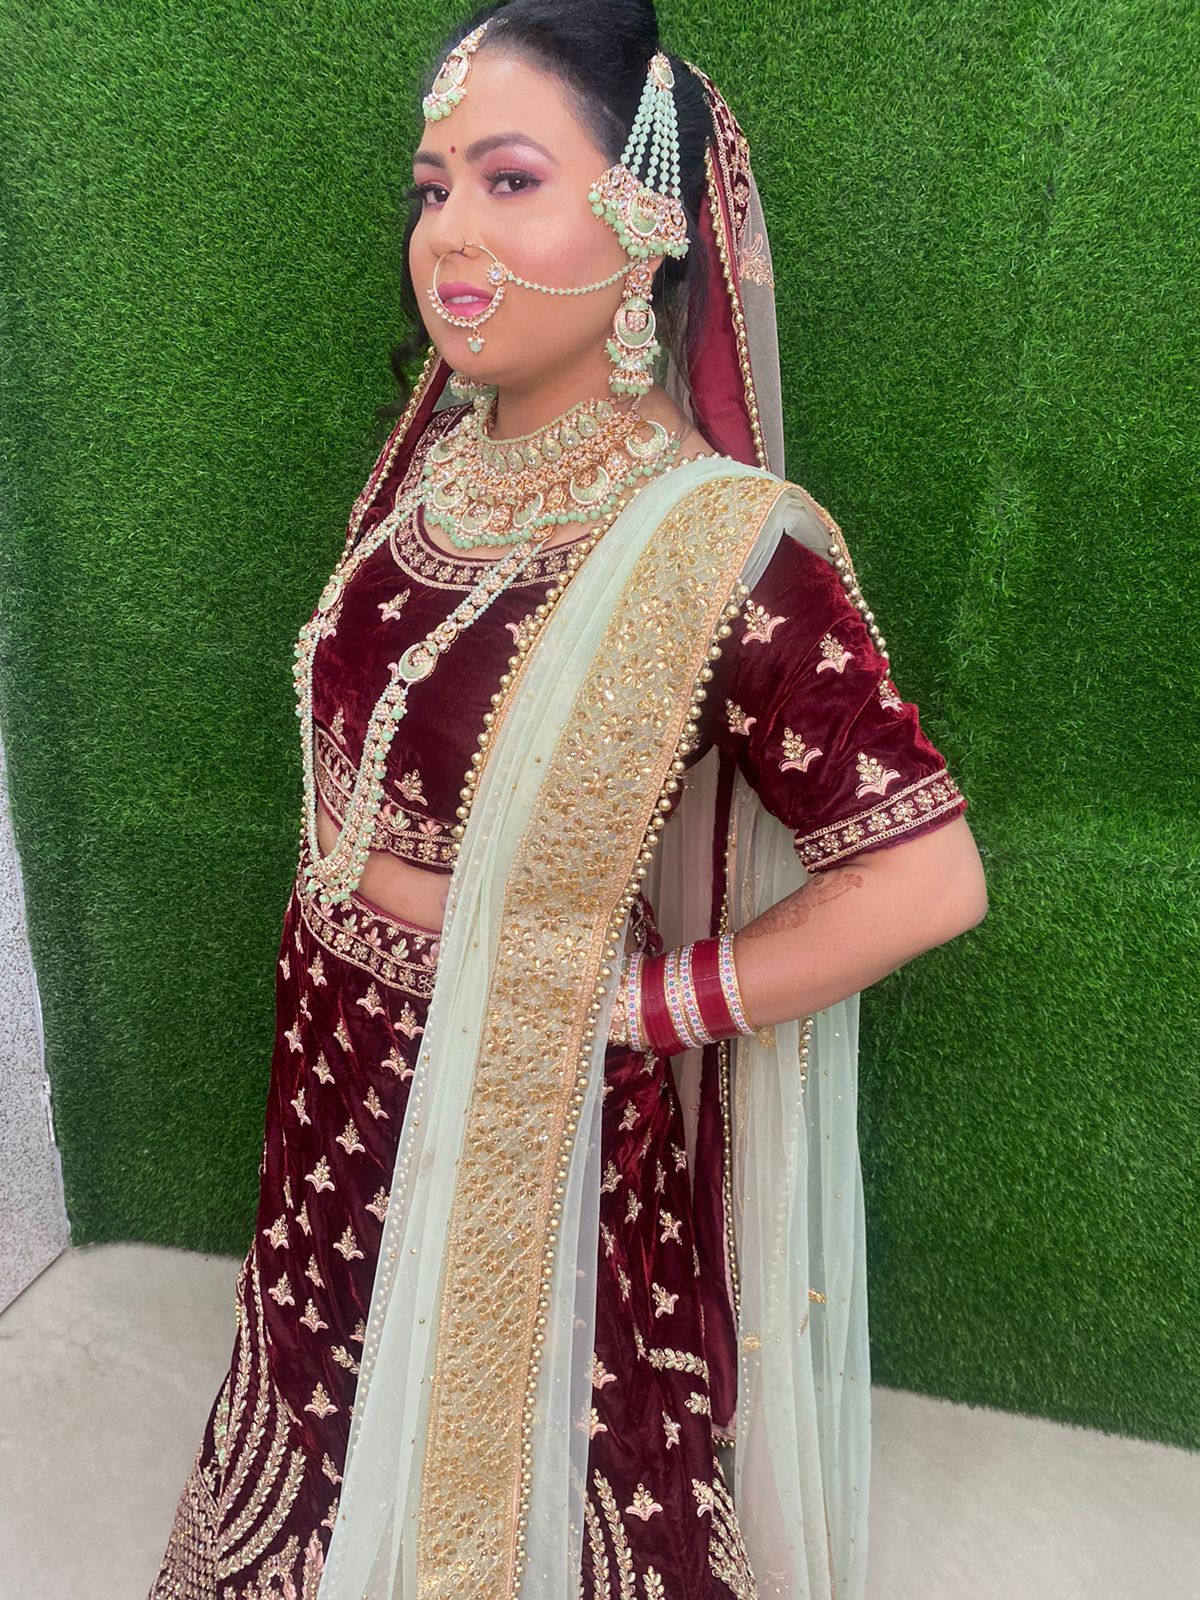 harmeet-kaur-makeup-artist-chandigarh